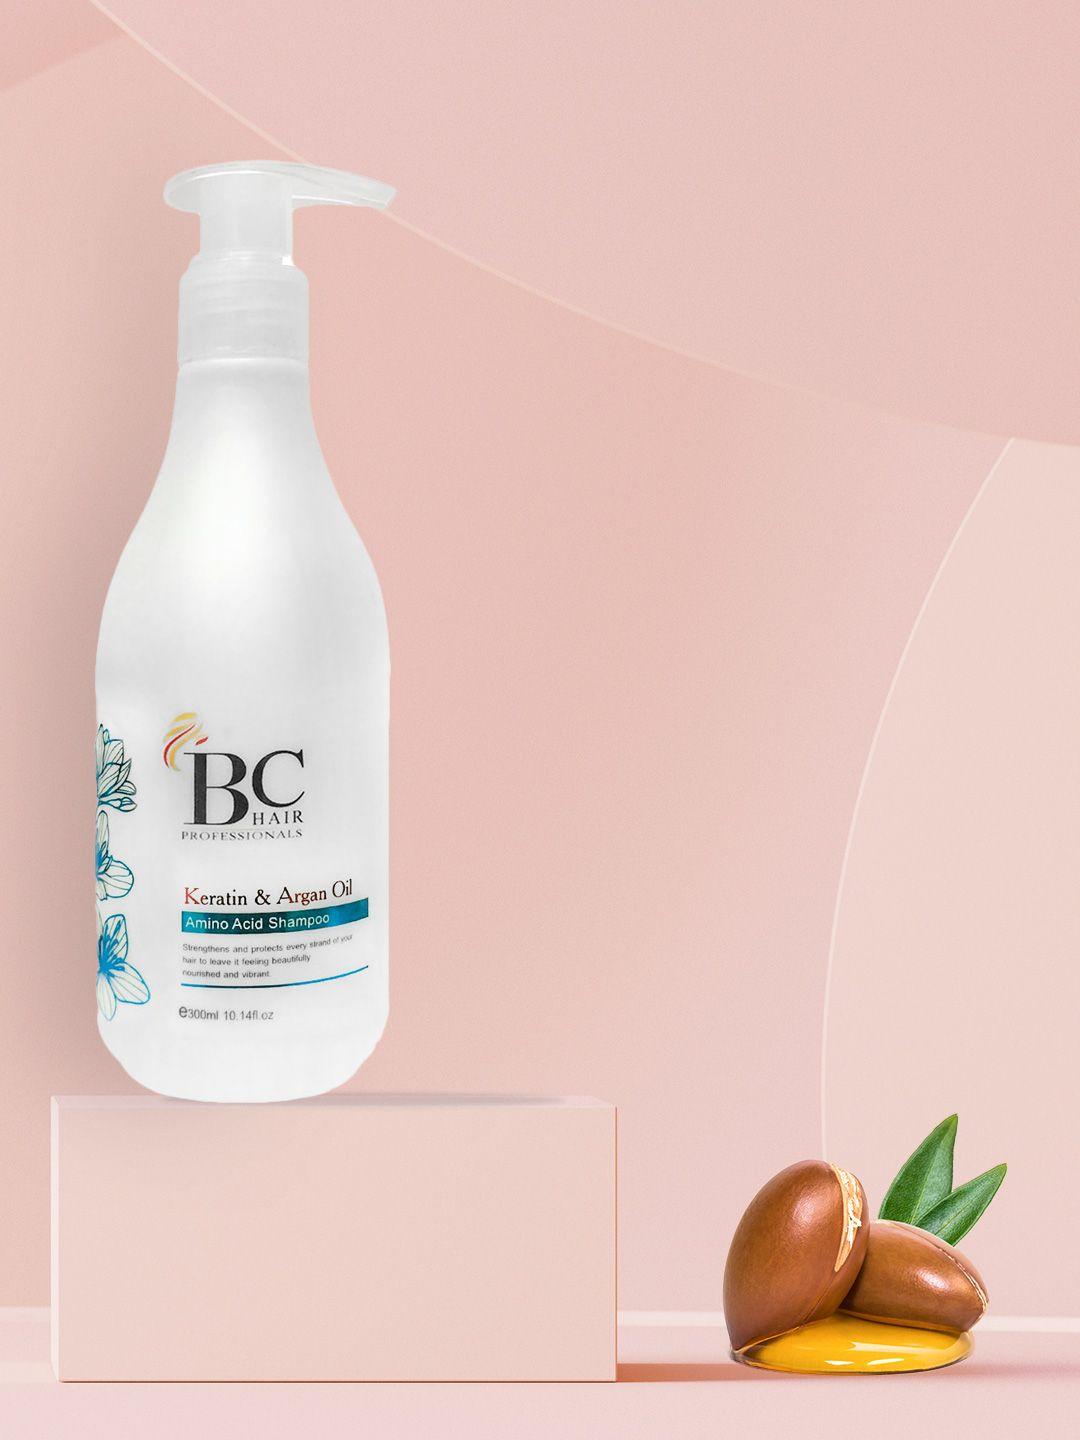 berina bc amino acid shampoo with kertain & argan oil extract - 300ml